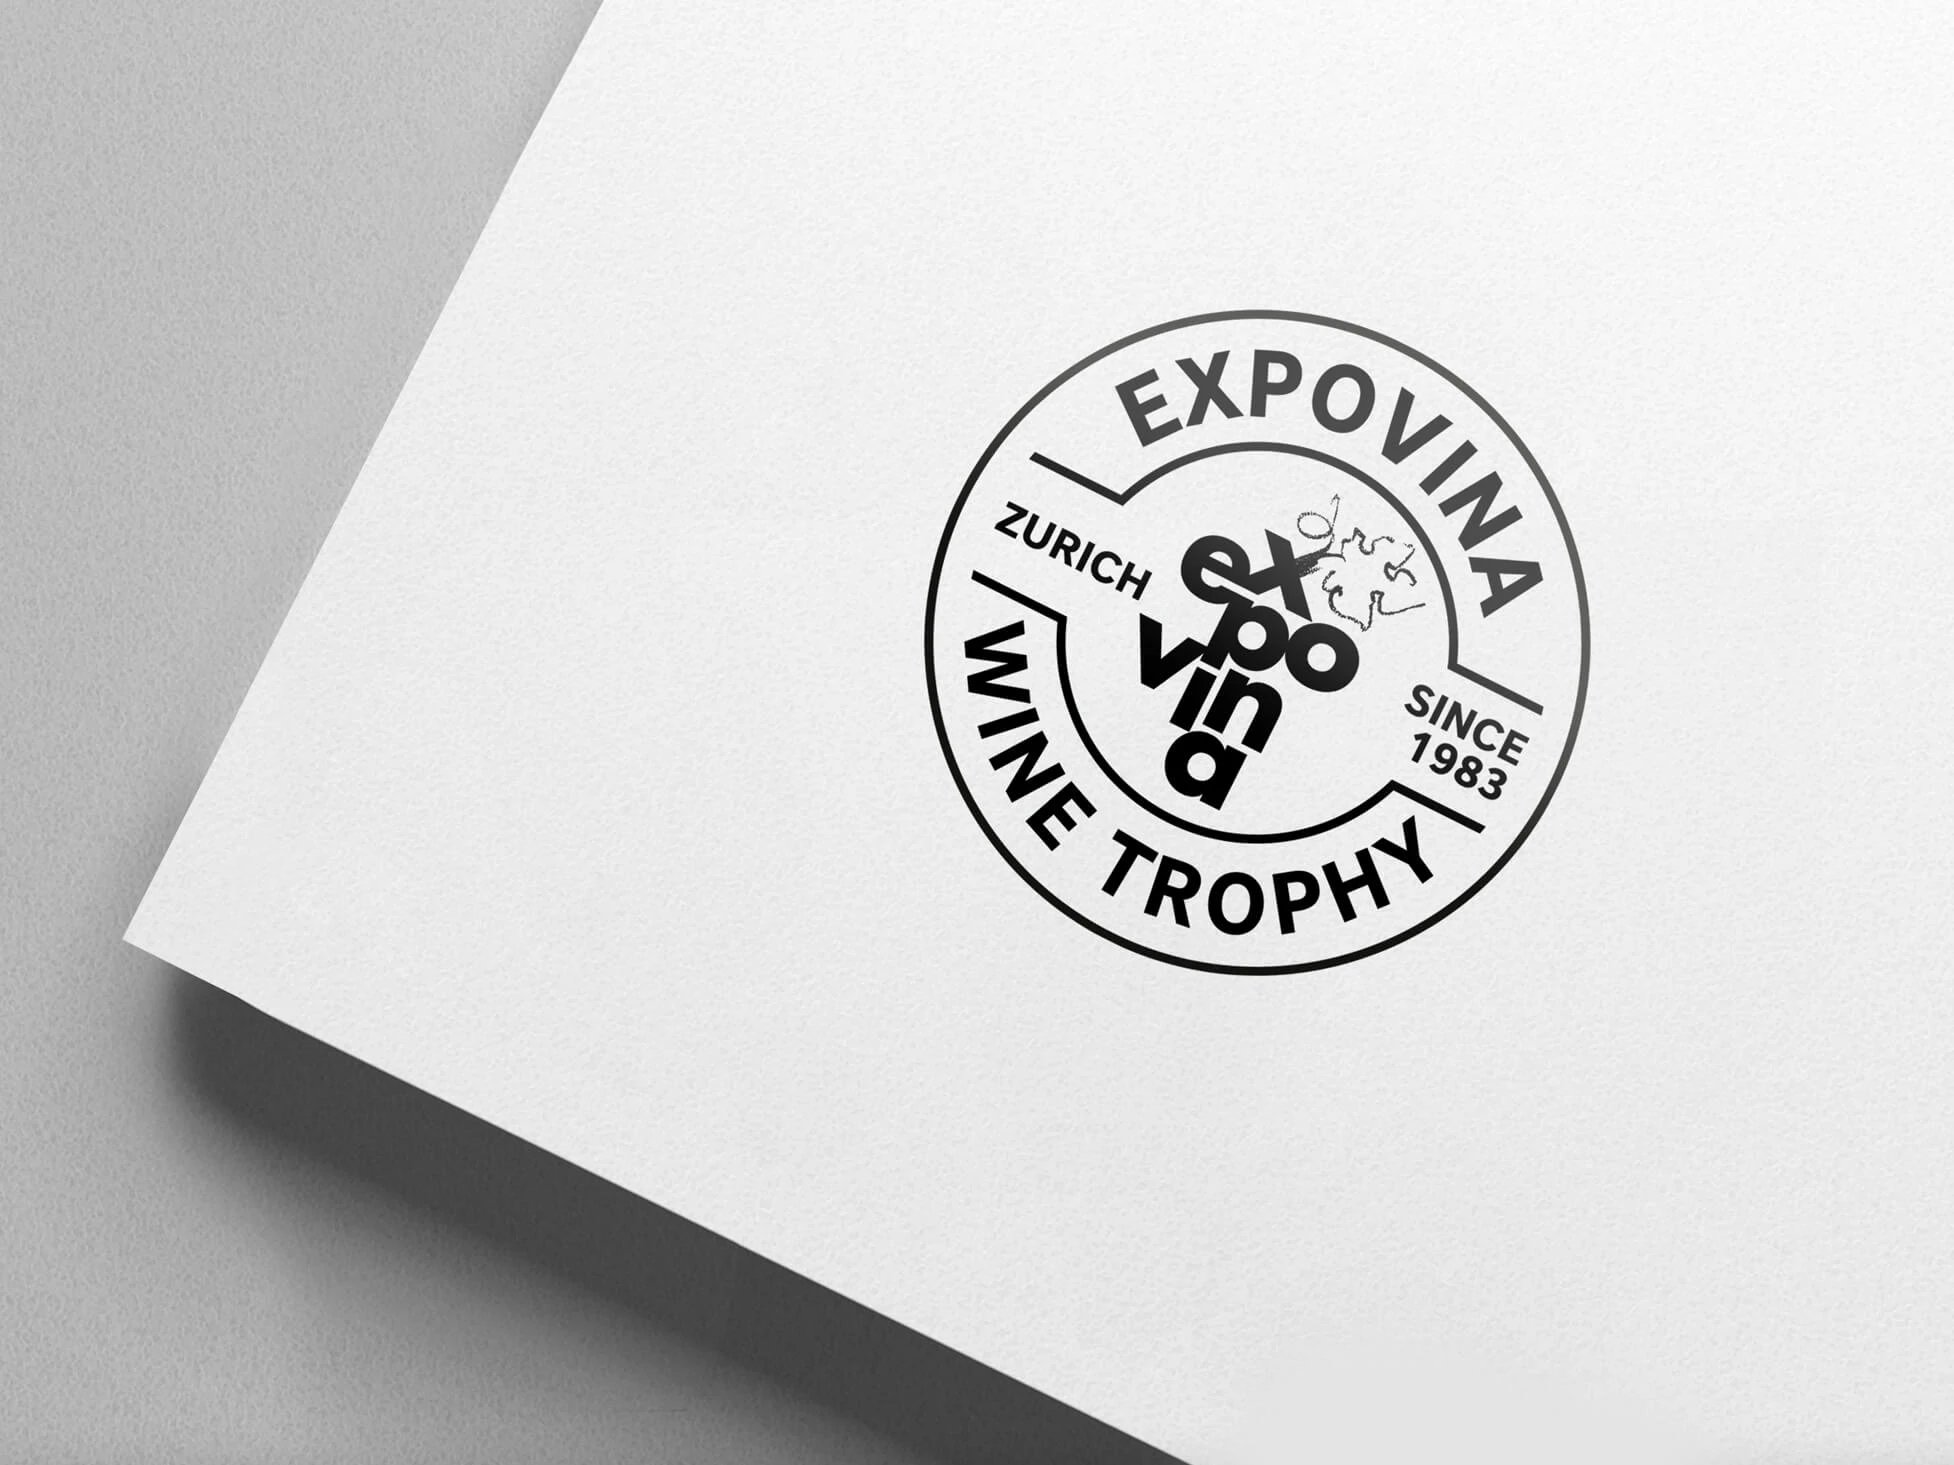 Expovina Wine Trophy Letterhead